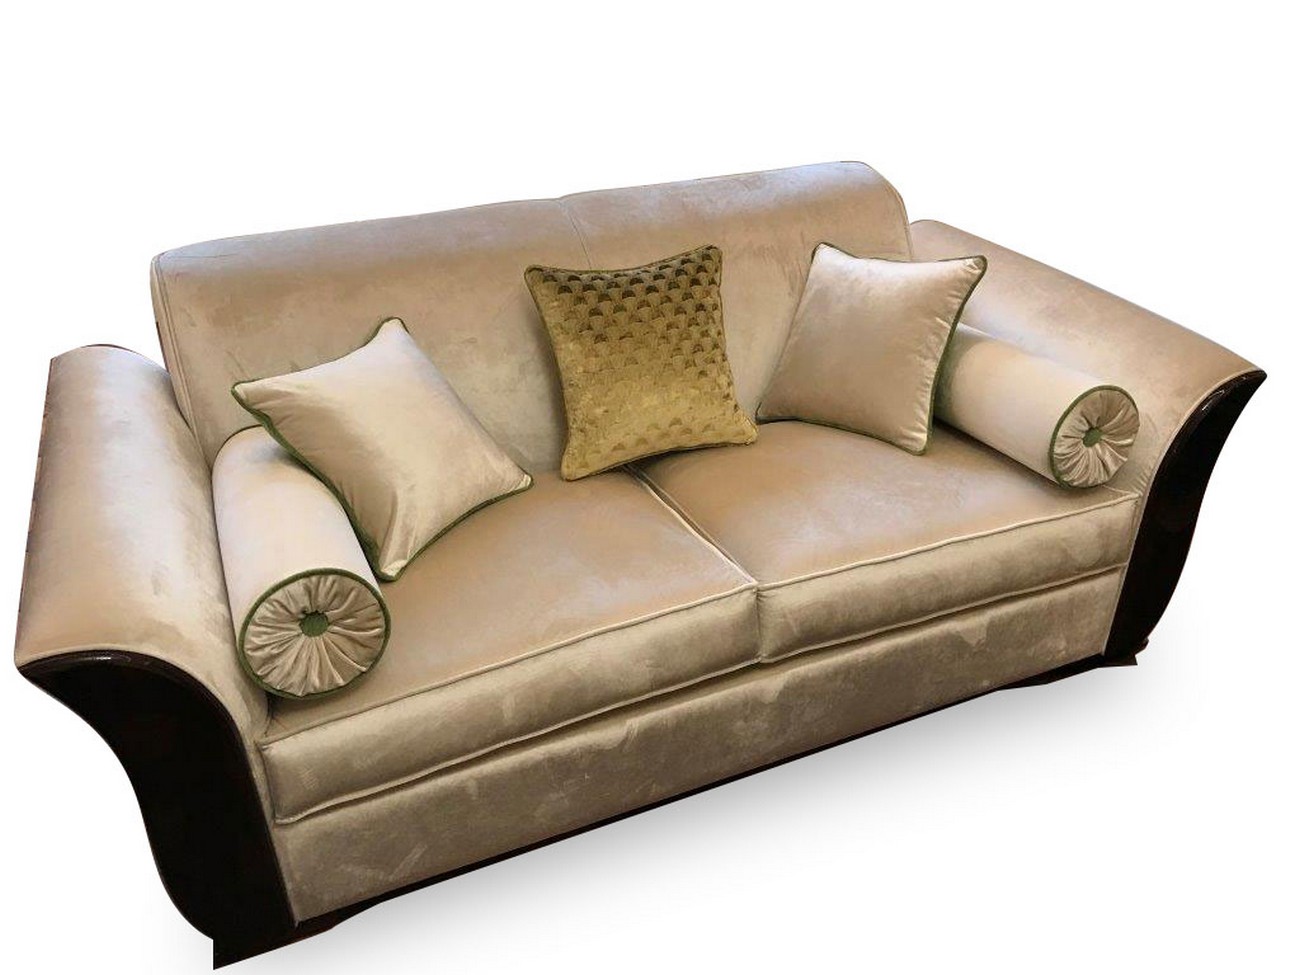 Art deco luxury sofa